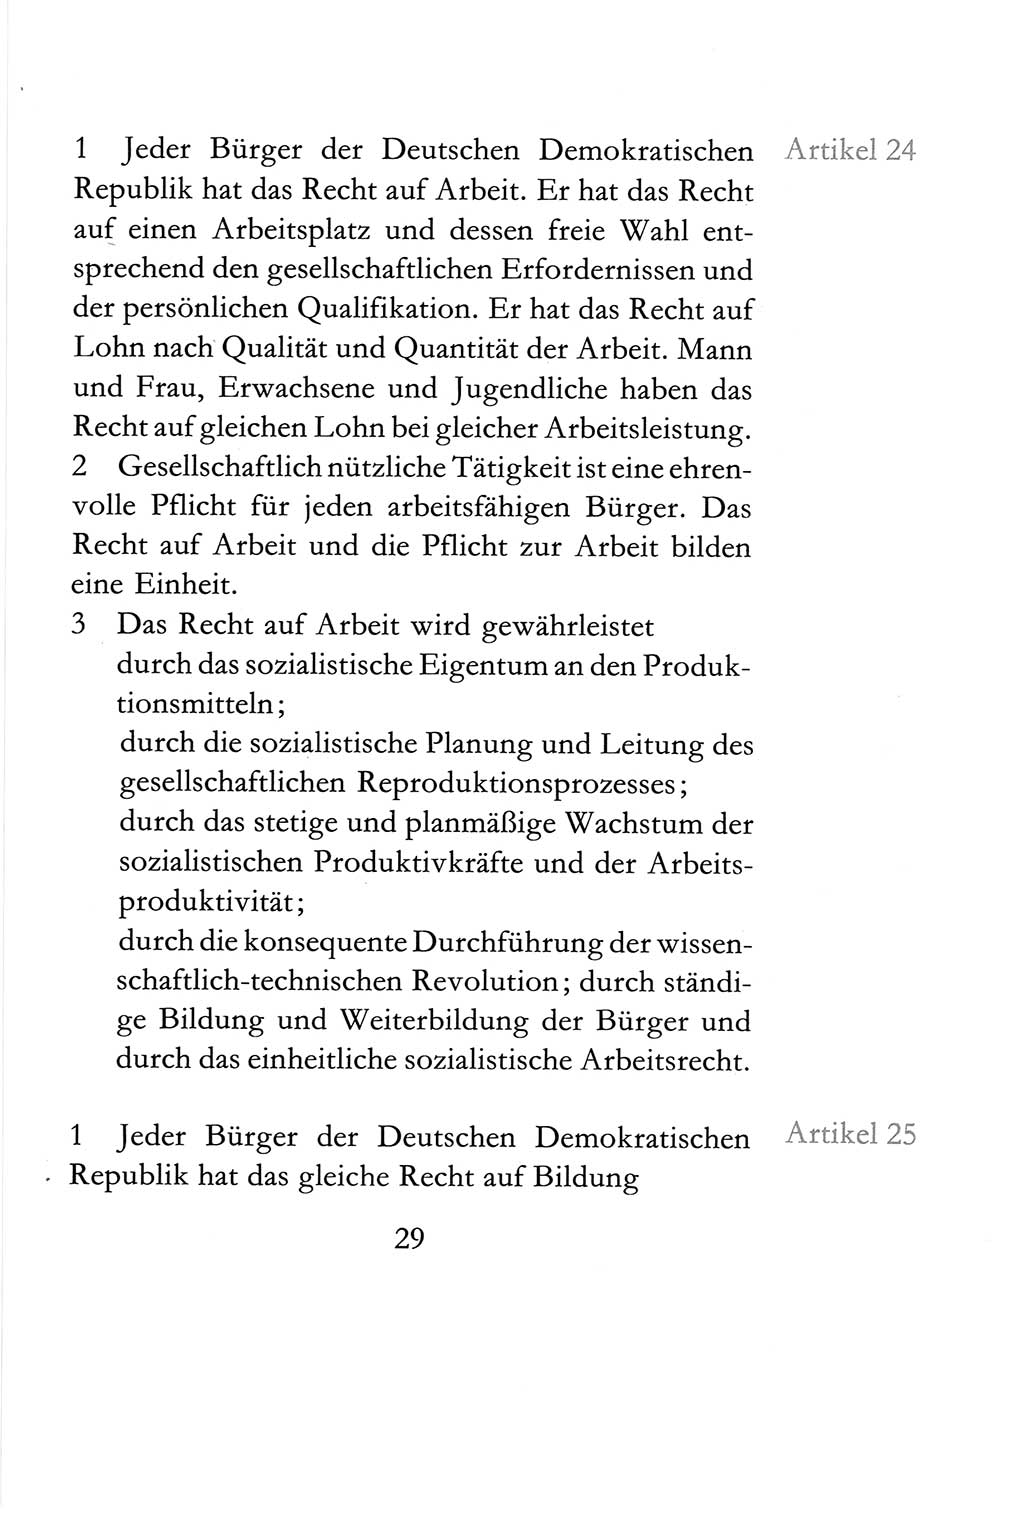 Verfassung der Deutschen Demokratischen Republik (DDR) vom 6. April 1968, Seite 29 (Verf. DDR 1968, S. 29)